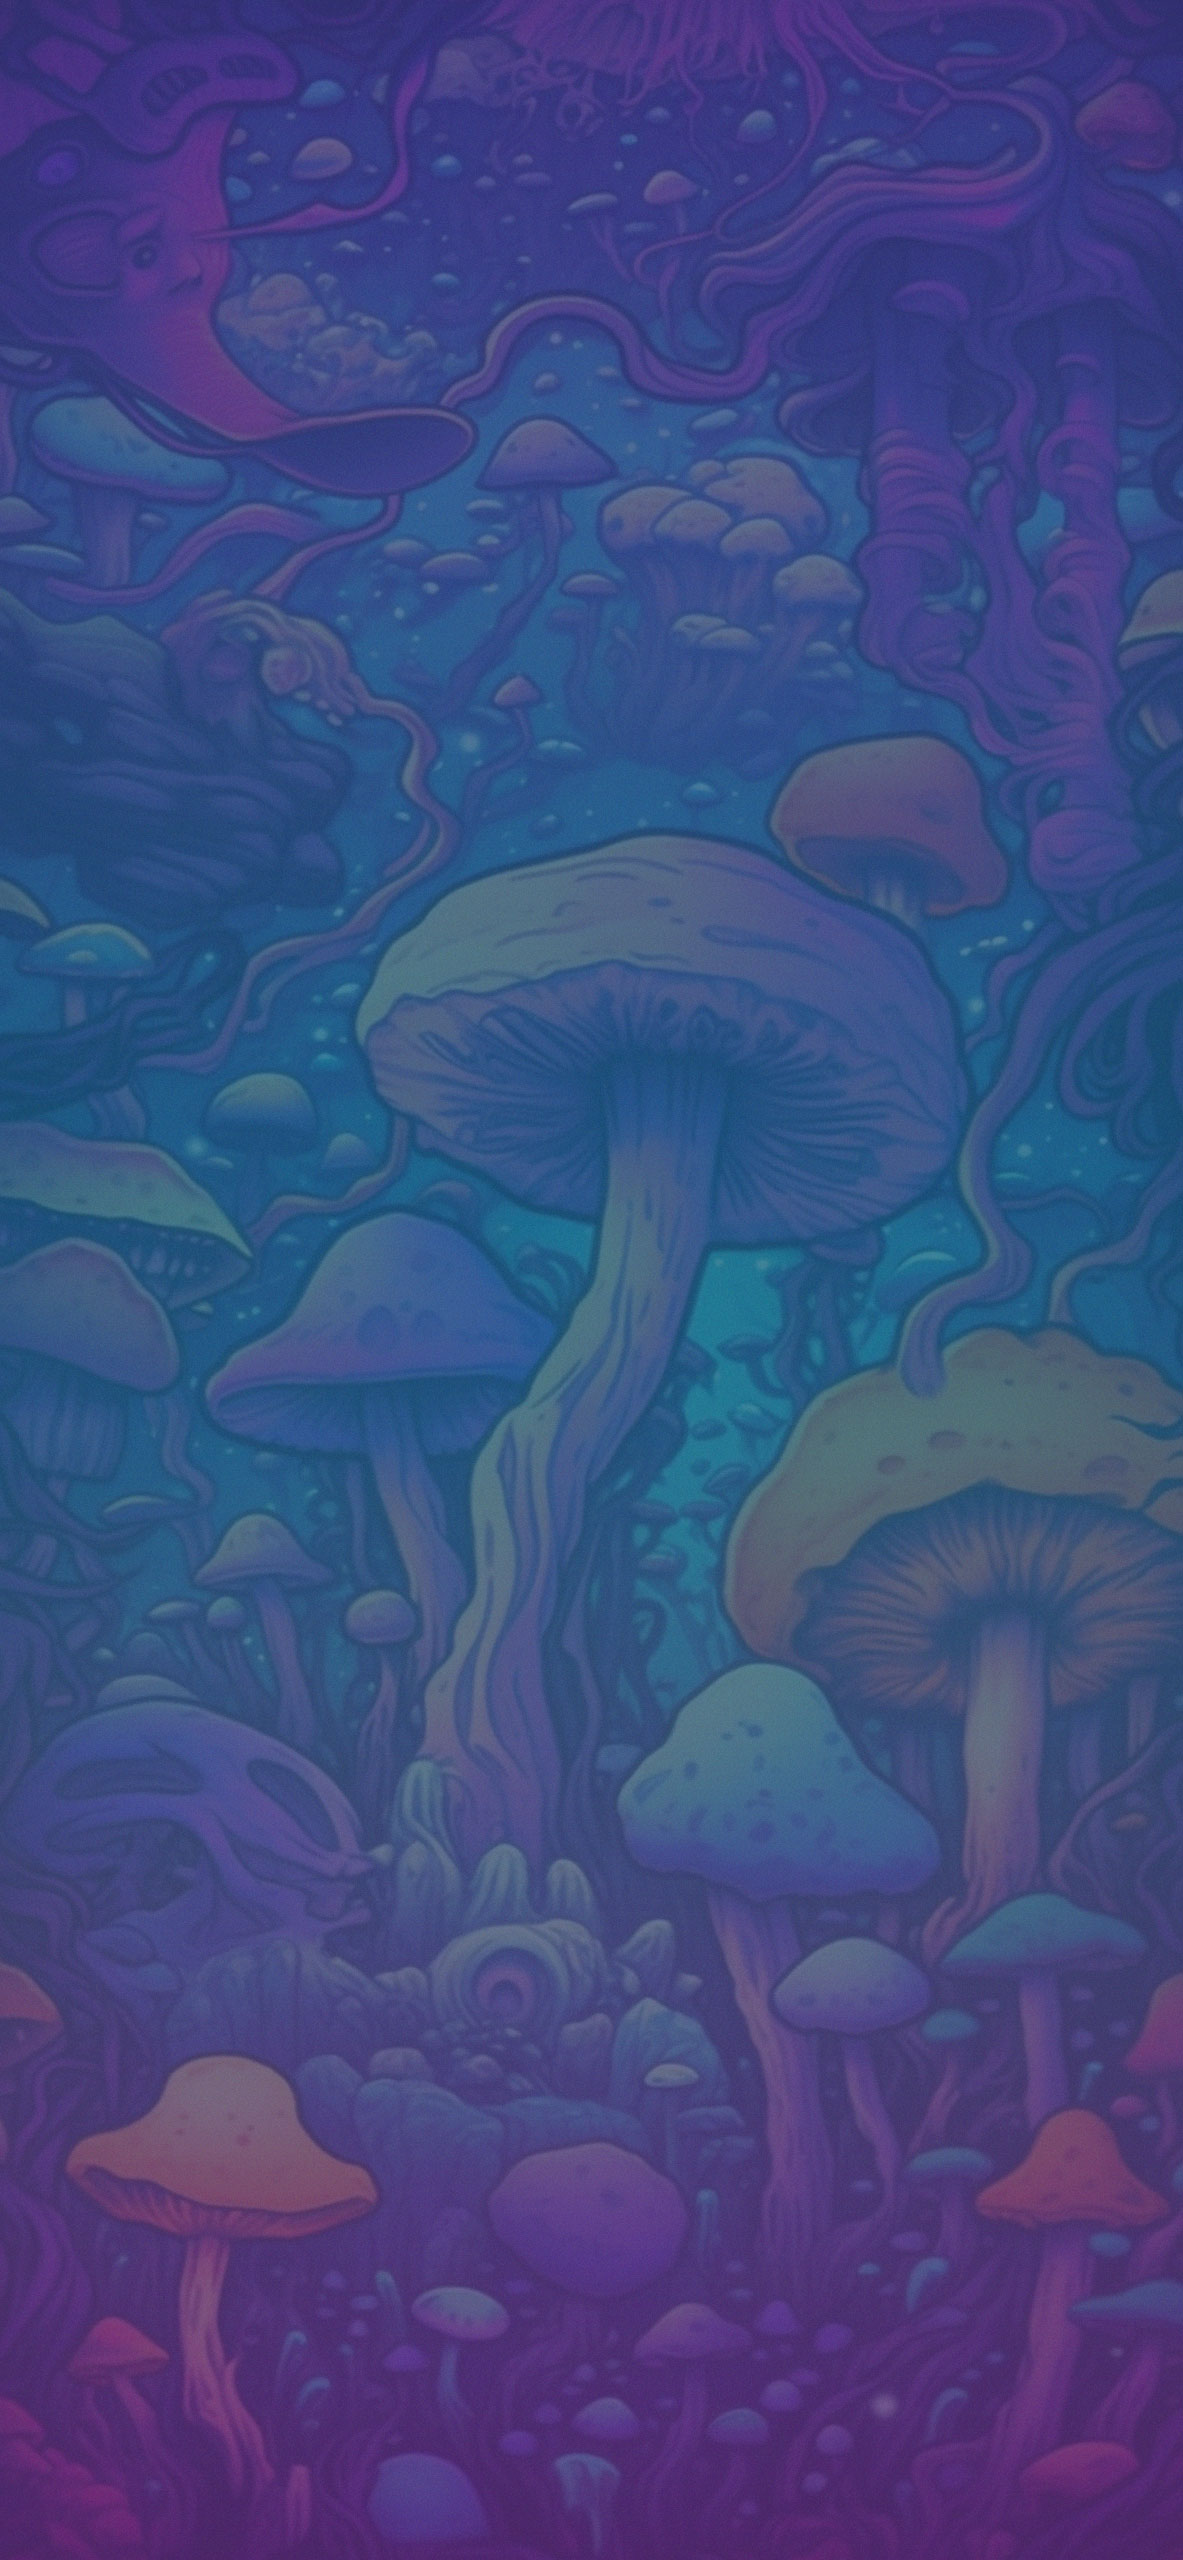 colorful mushrooms wallpaper